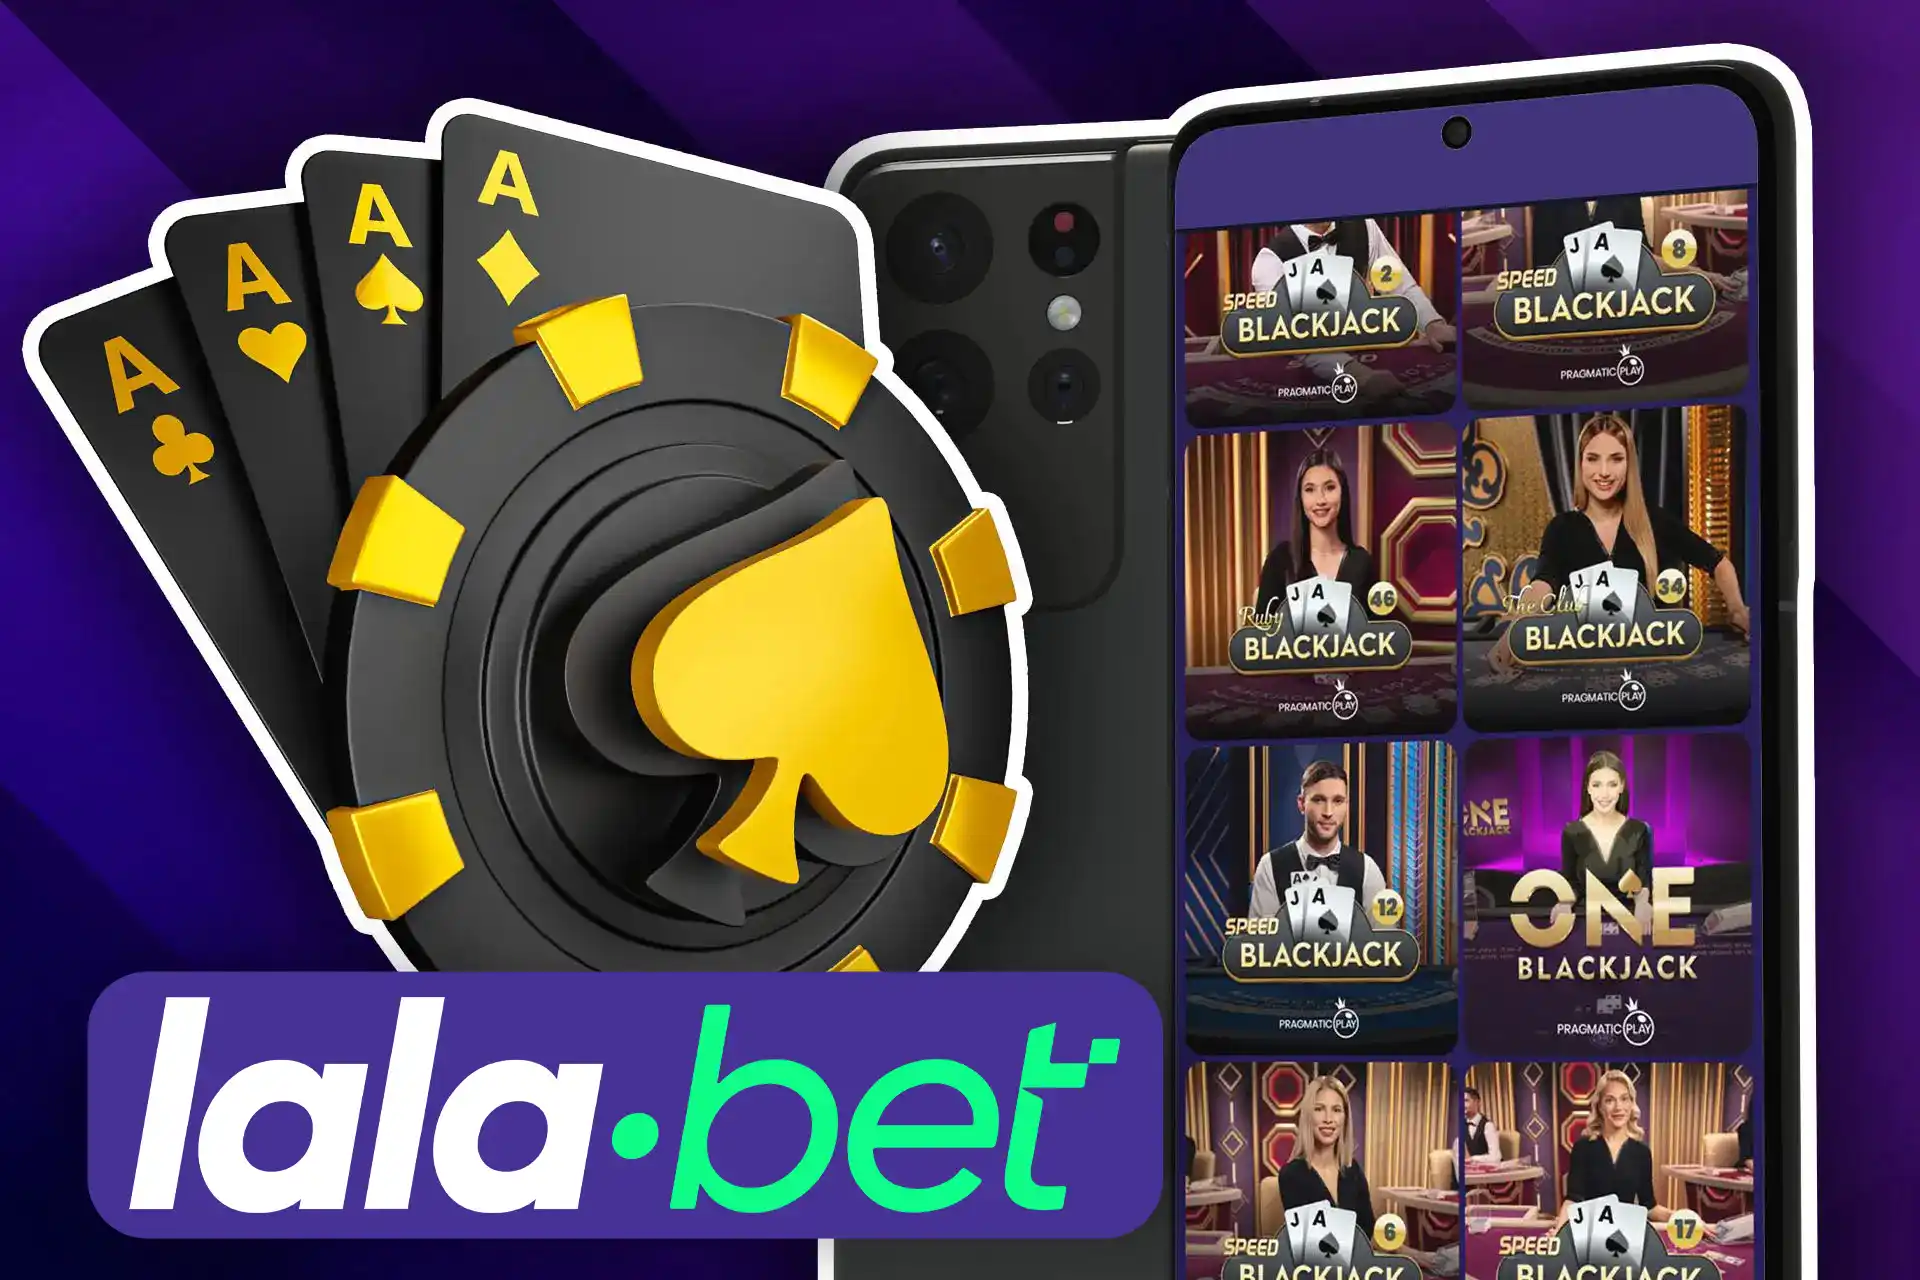 Você também pode jogar blackjack no aplicativo móvel Lalabet.